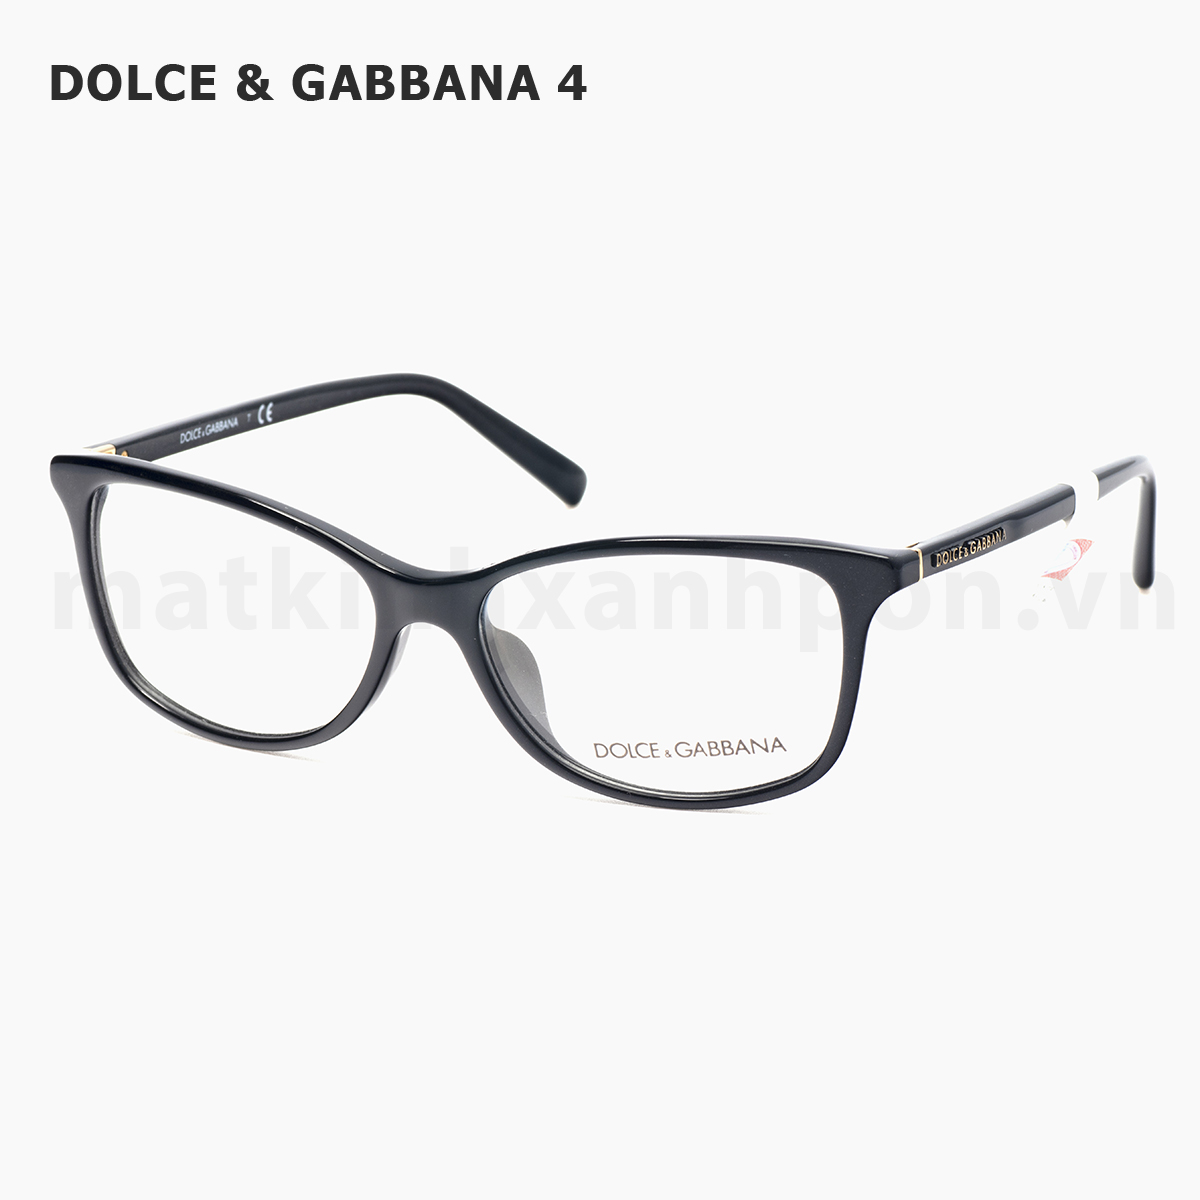 Dolce & Gabbana 4